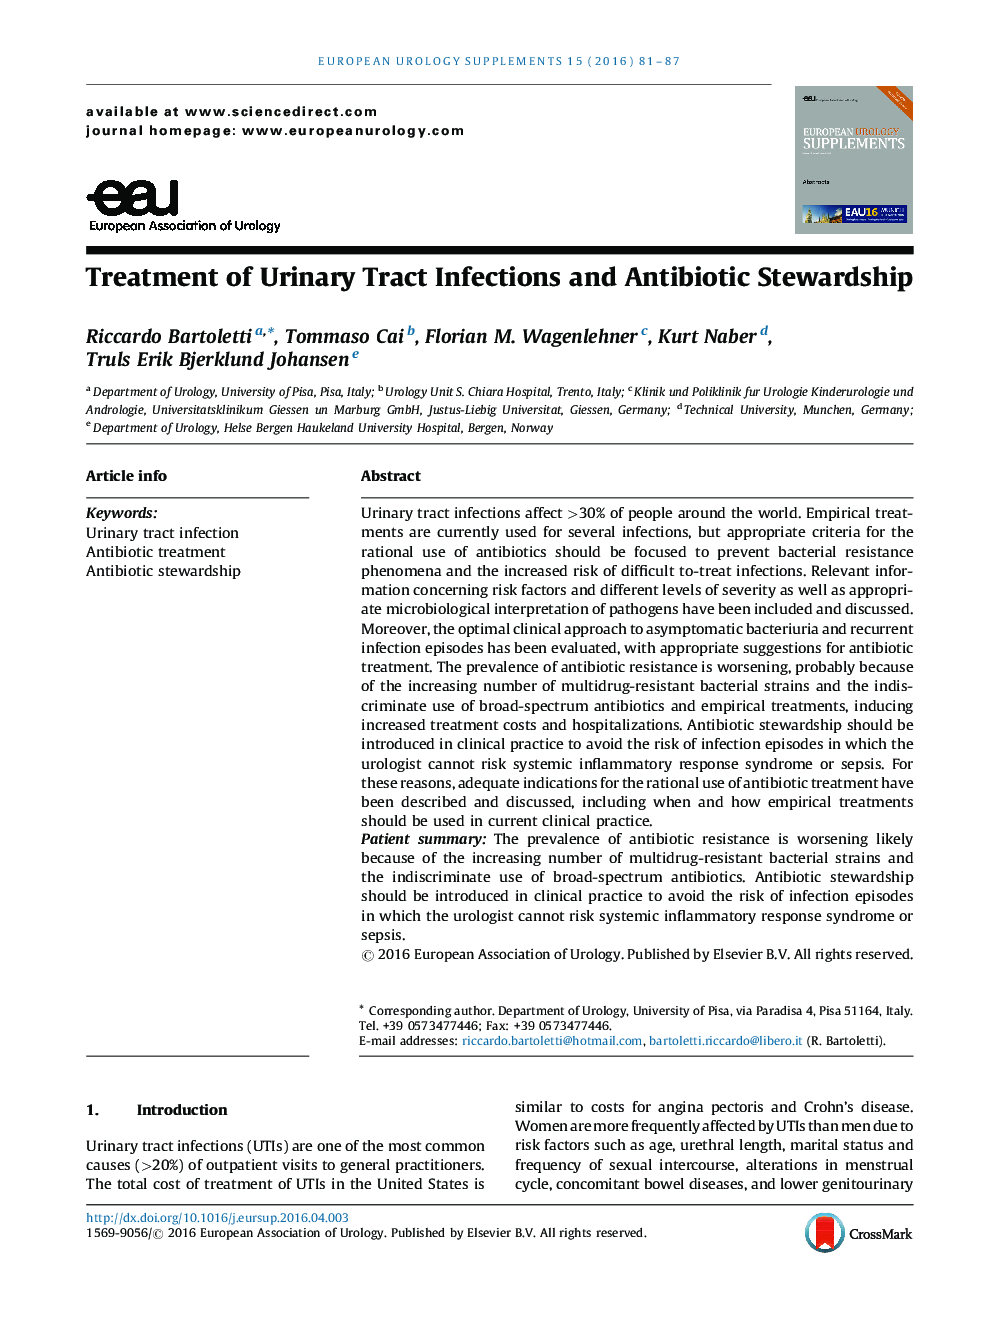 درمان عفونتهای مجاری ادراری  و مدیریت آنتی بیوتیک